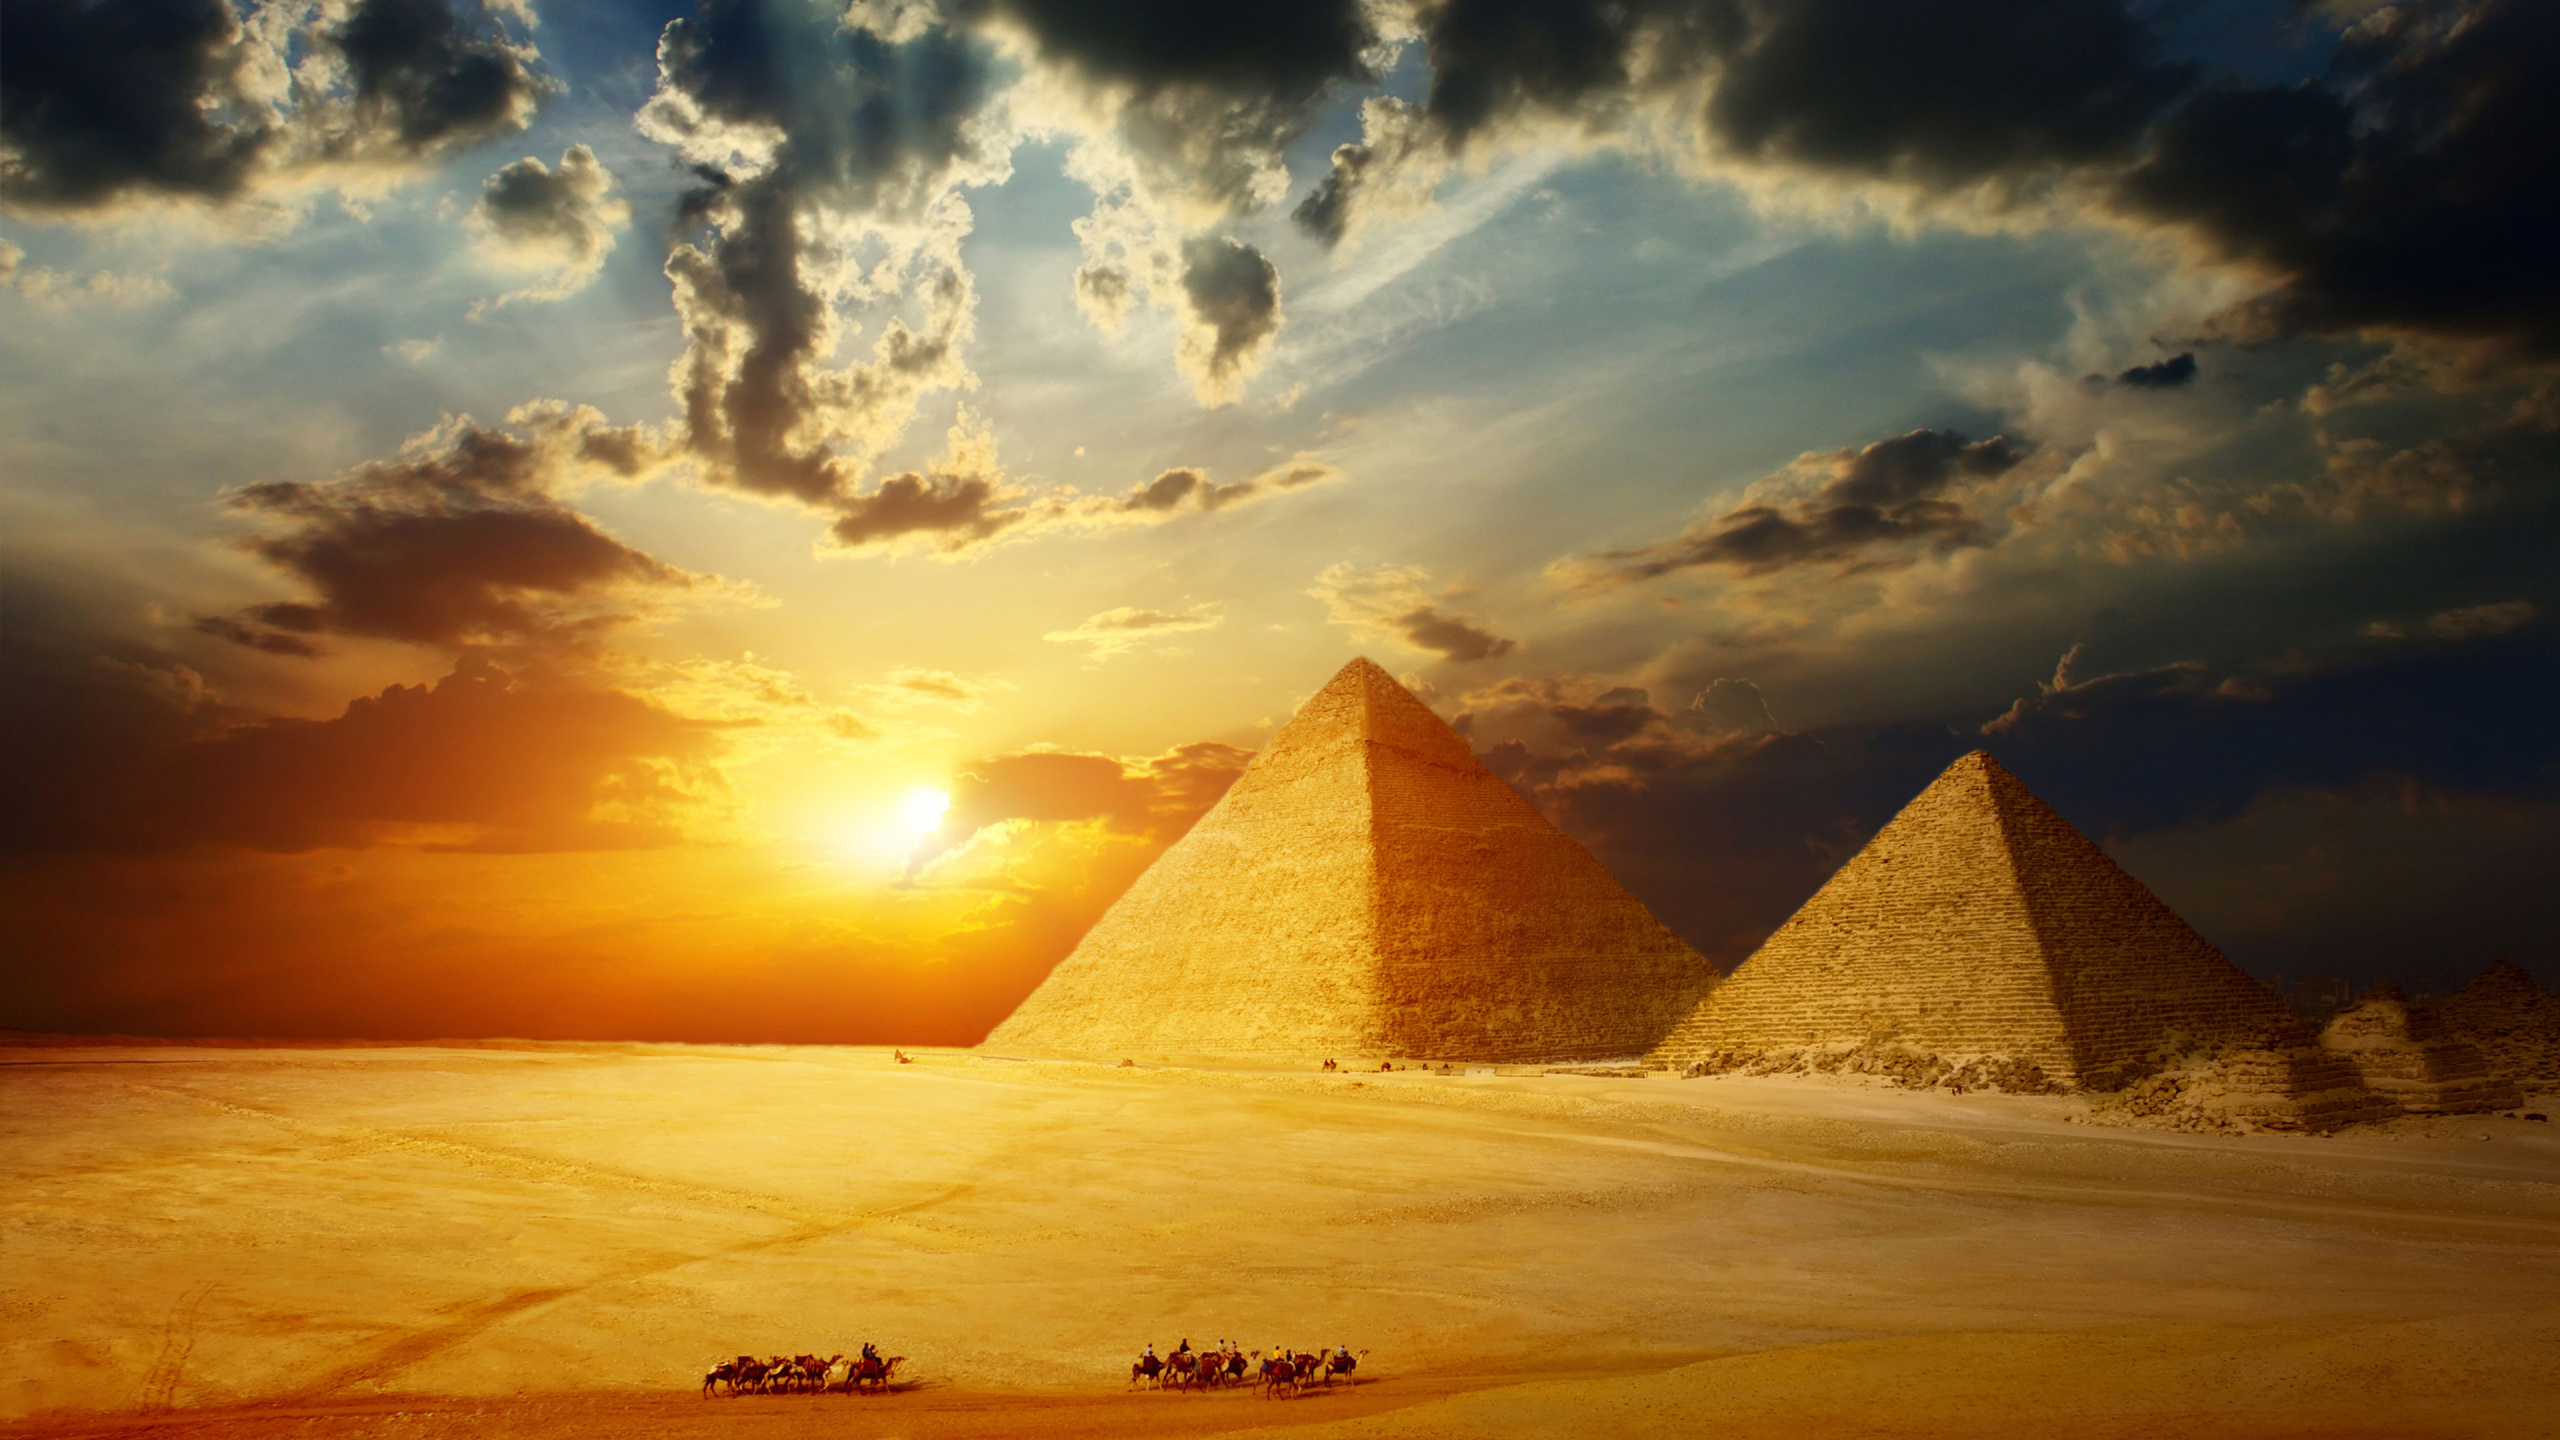 Braune Pyramide Auf Weißem Sand Bei Sonnenuntergang. Wallpaper in 2560x1440 Resolution